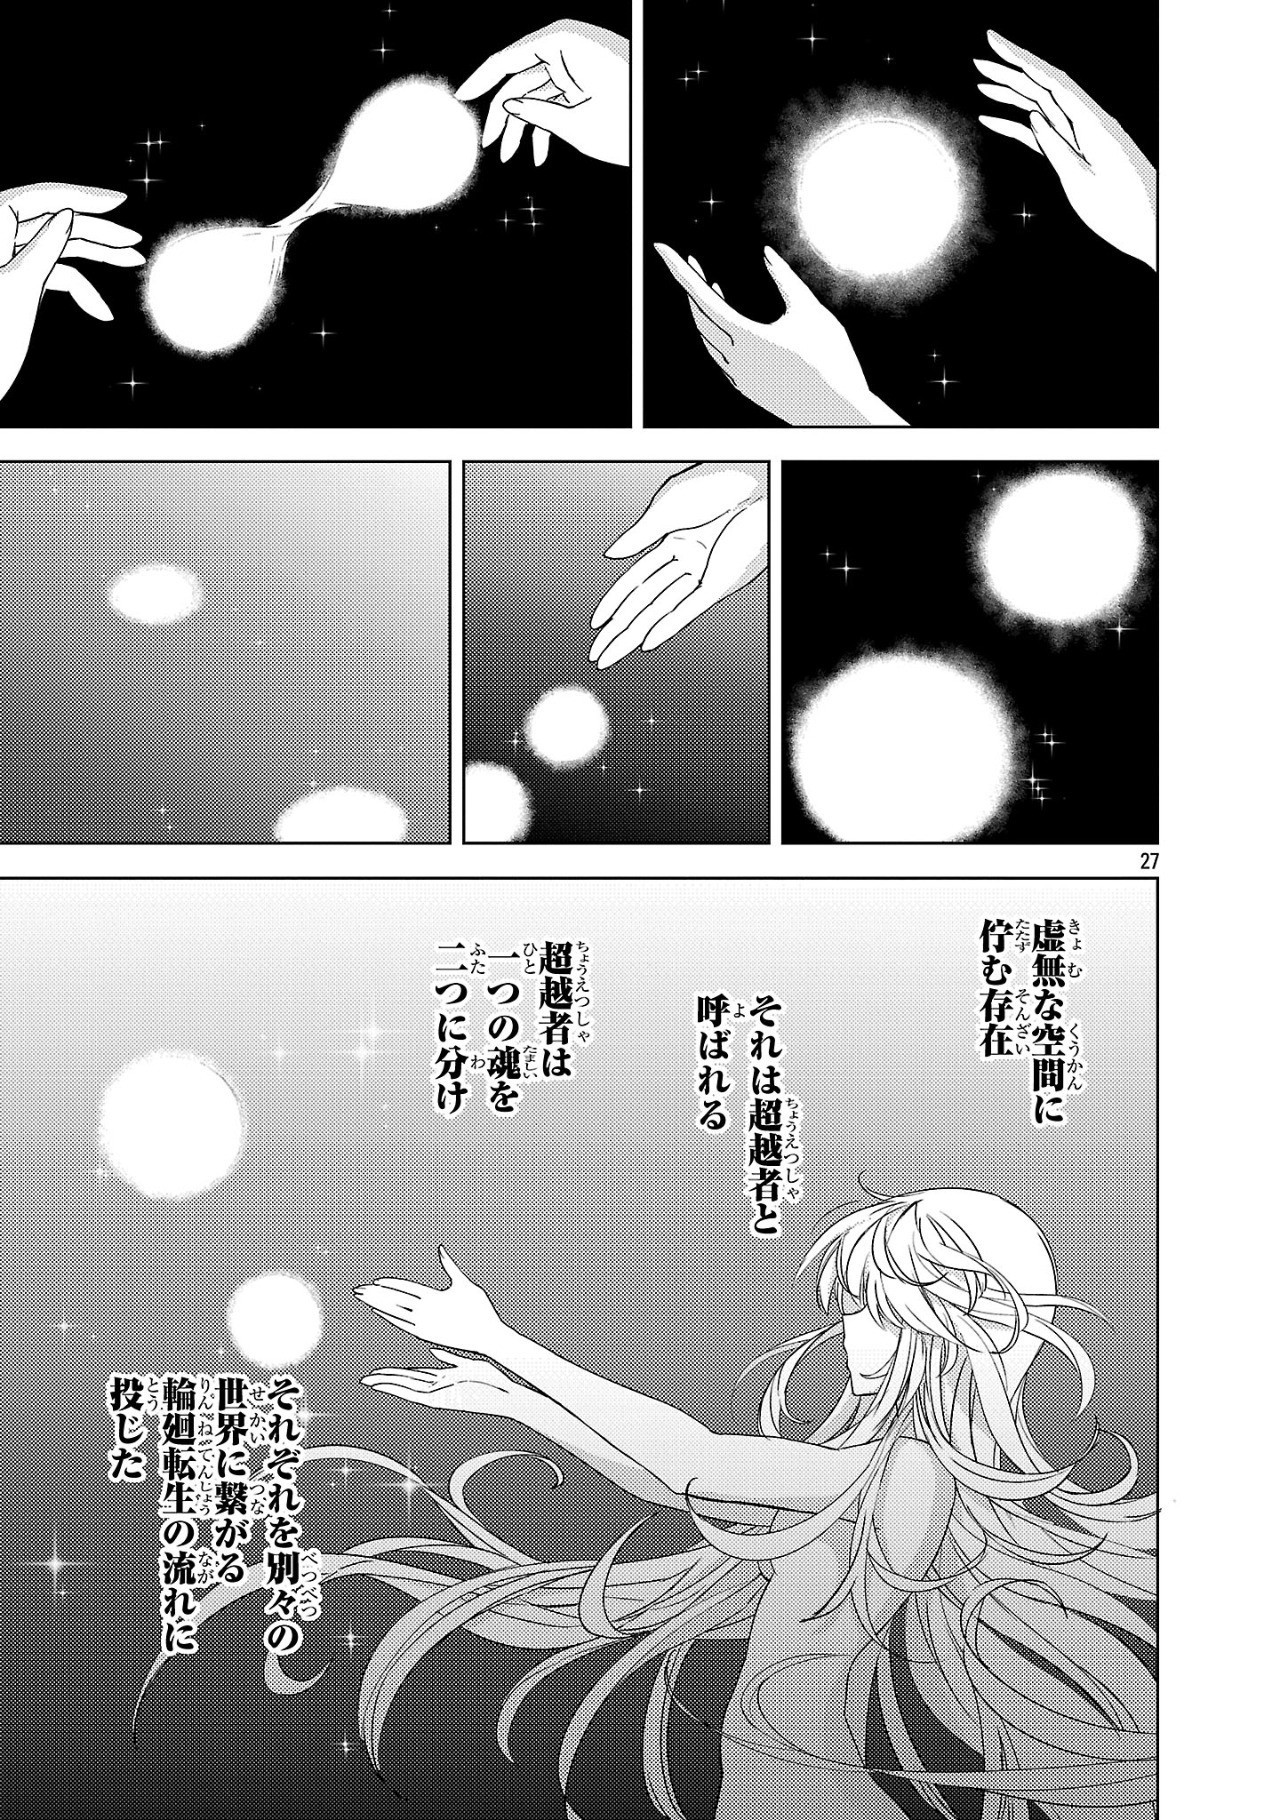 Gakeppuchi Kizoku no Ikinokori Senryaku - Chapter 1 - Page 27